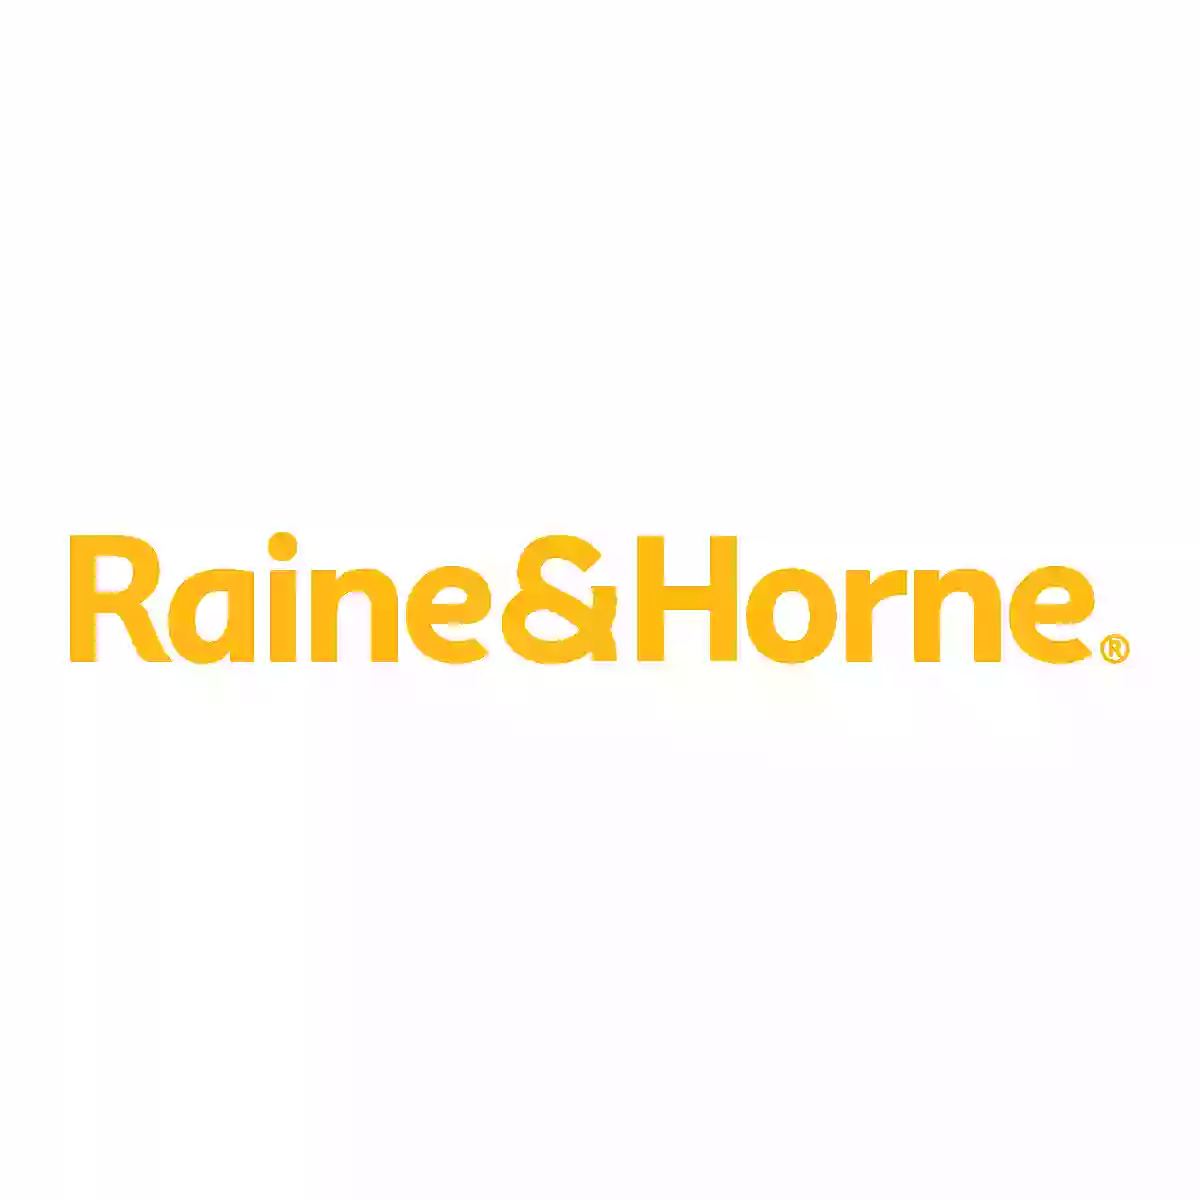 Raine & Horne Munno Para Real Estate Agents